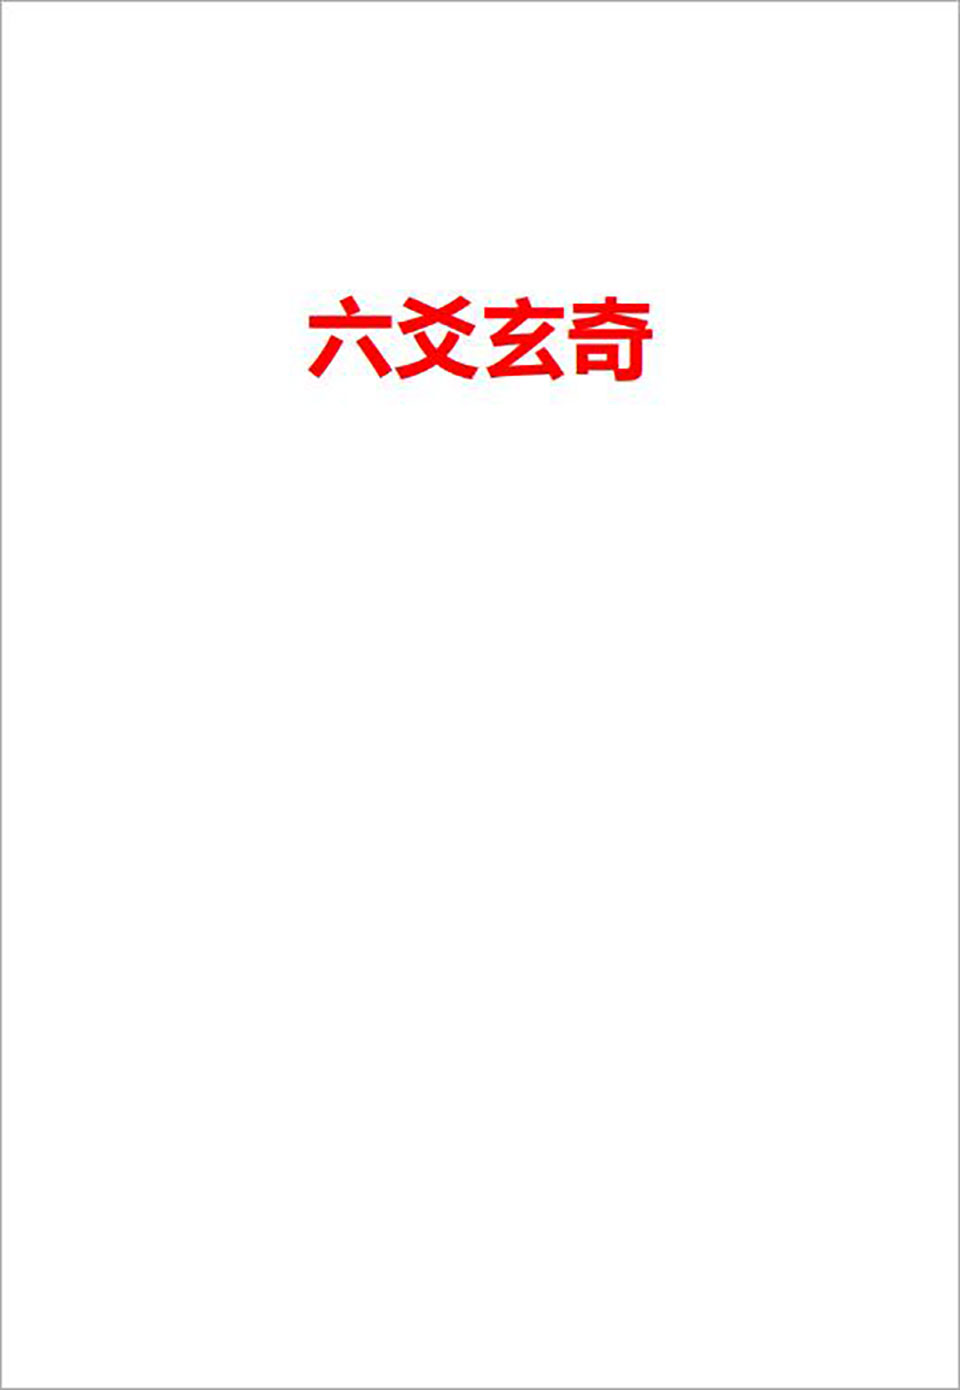 六爻玄奇网络版308页.pdf